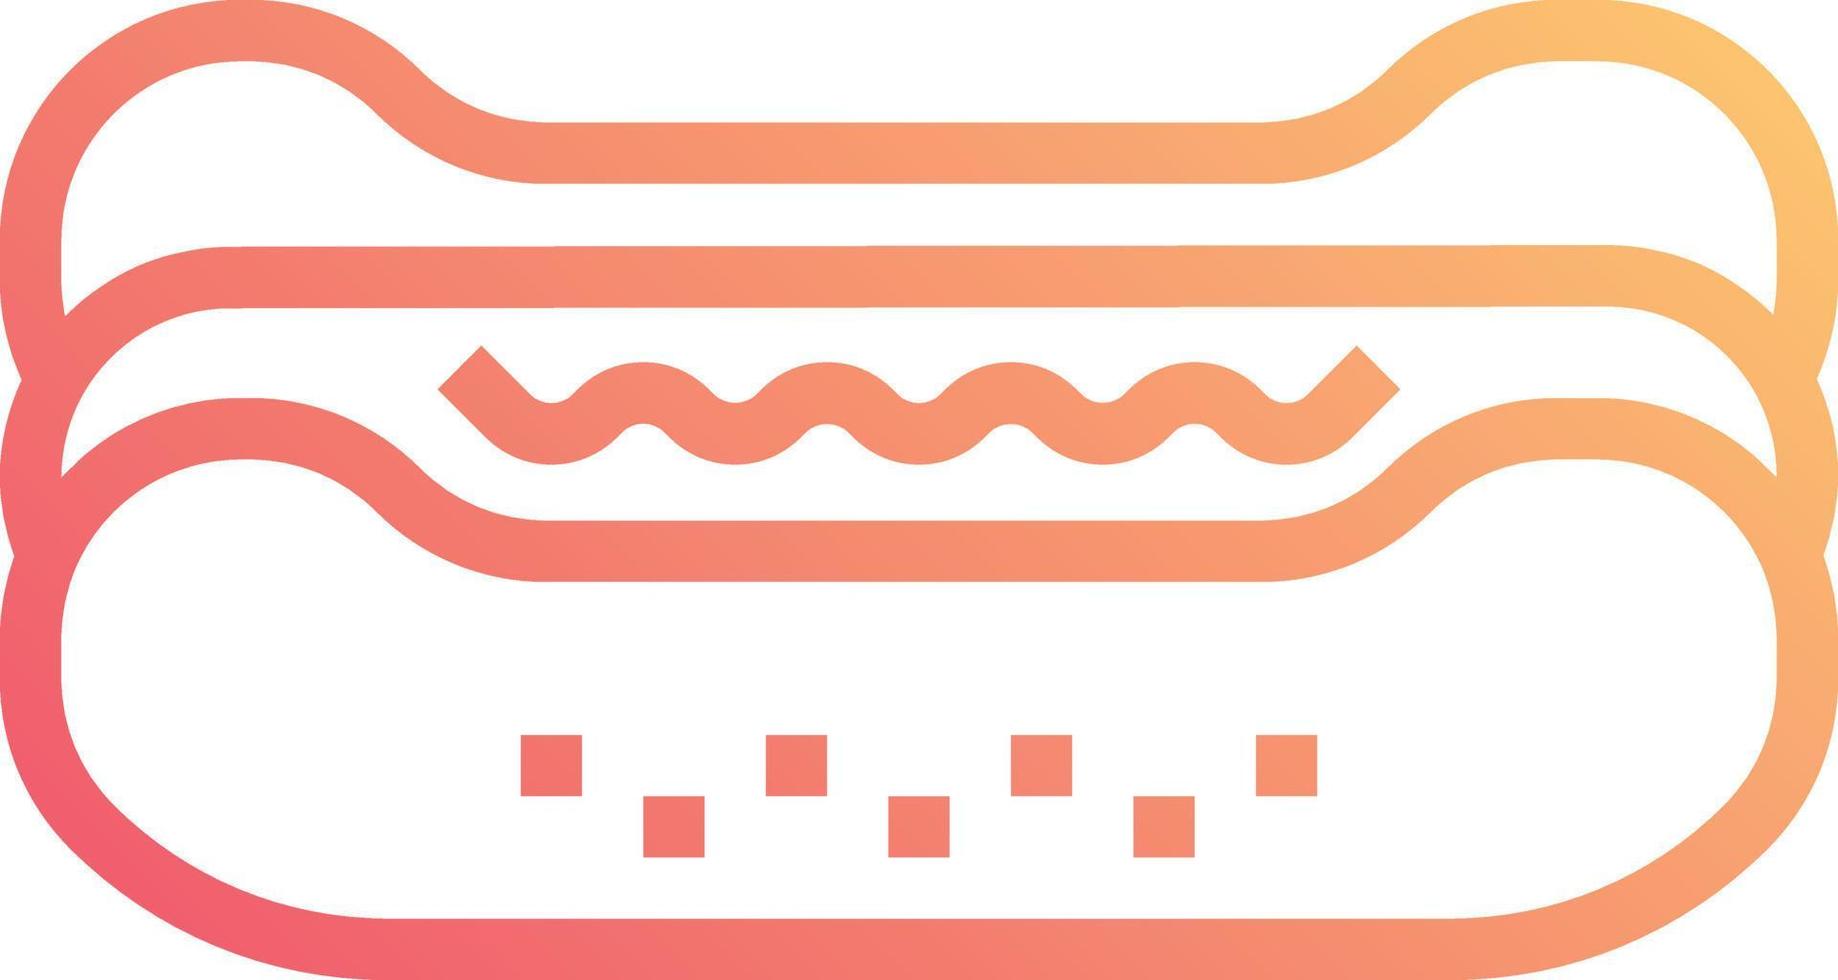 comida de cachorro-quente fastfood - ícone de gradiente vetor